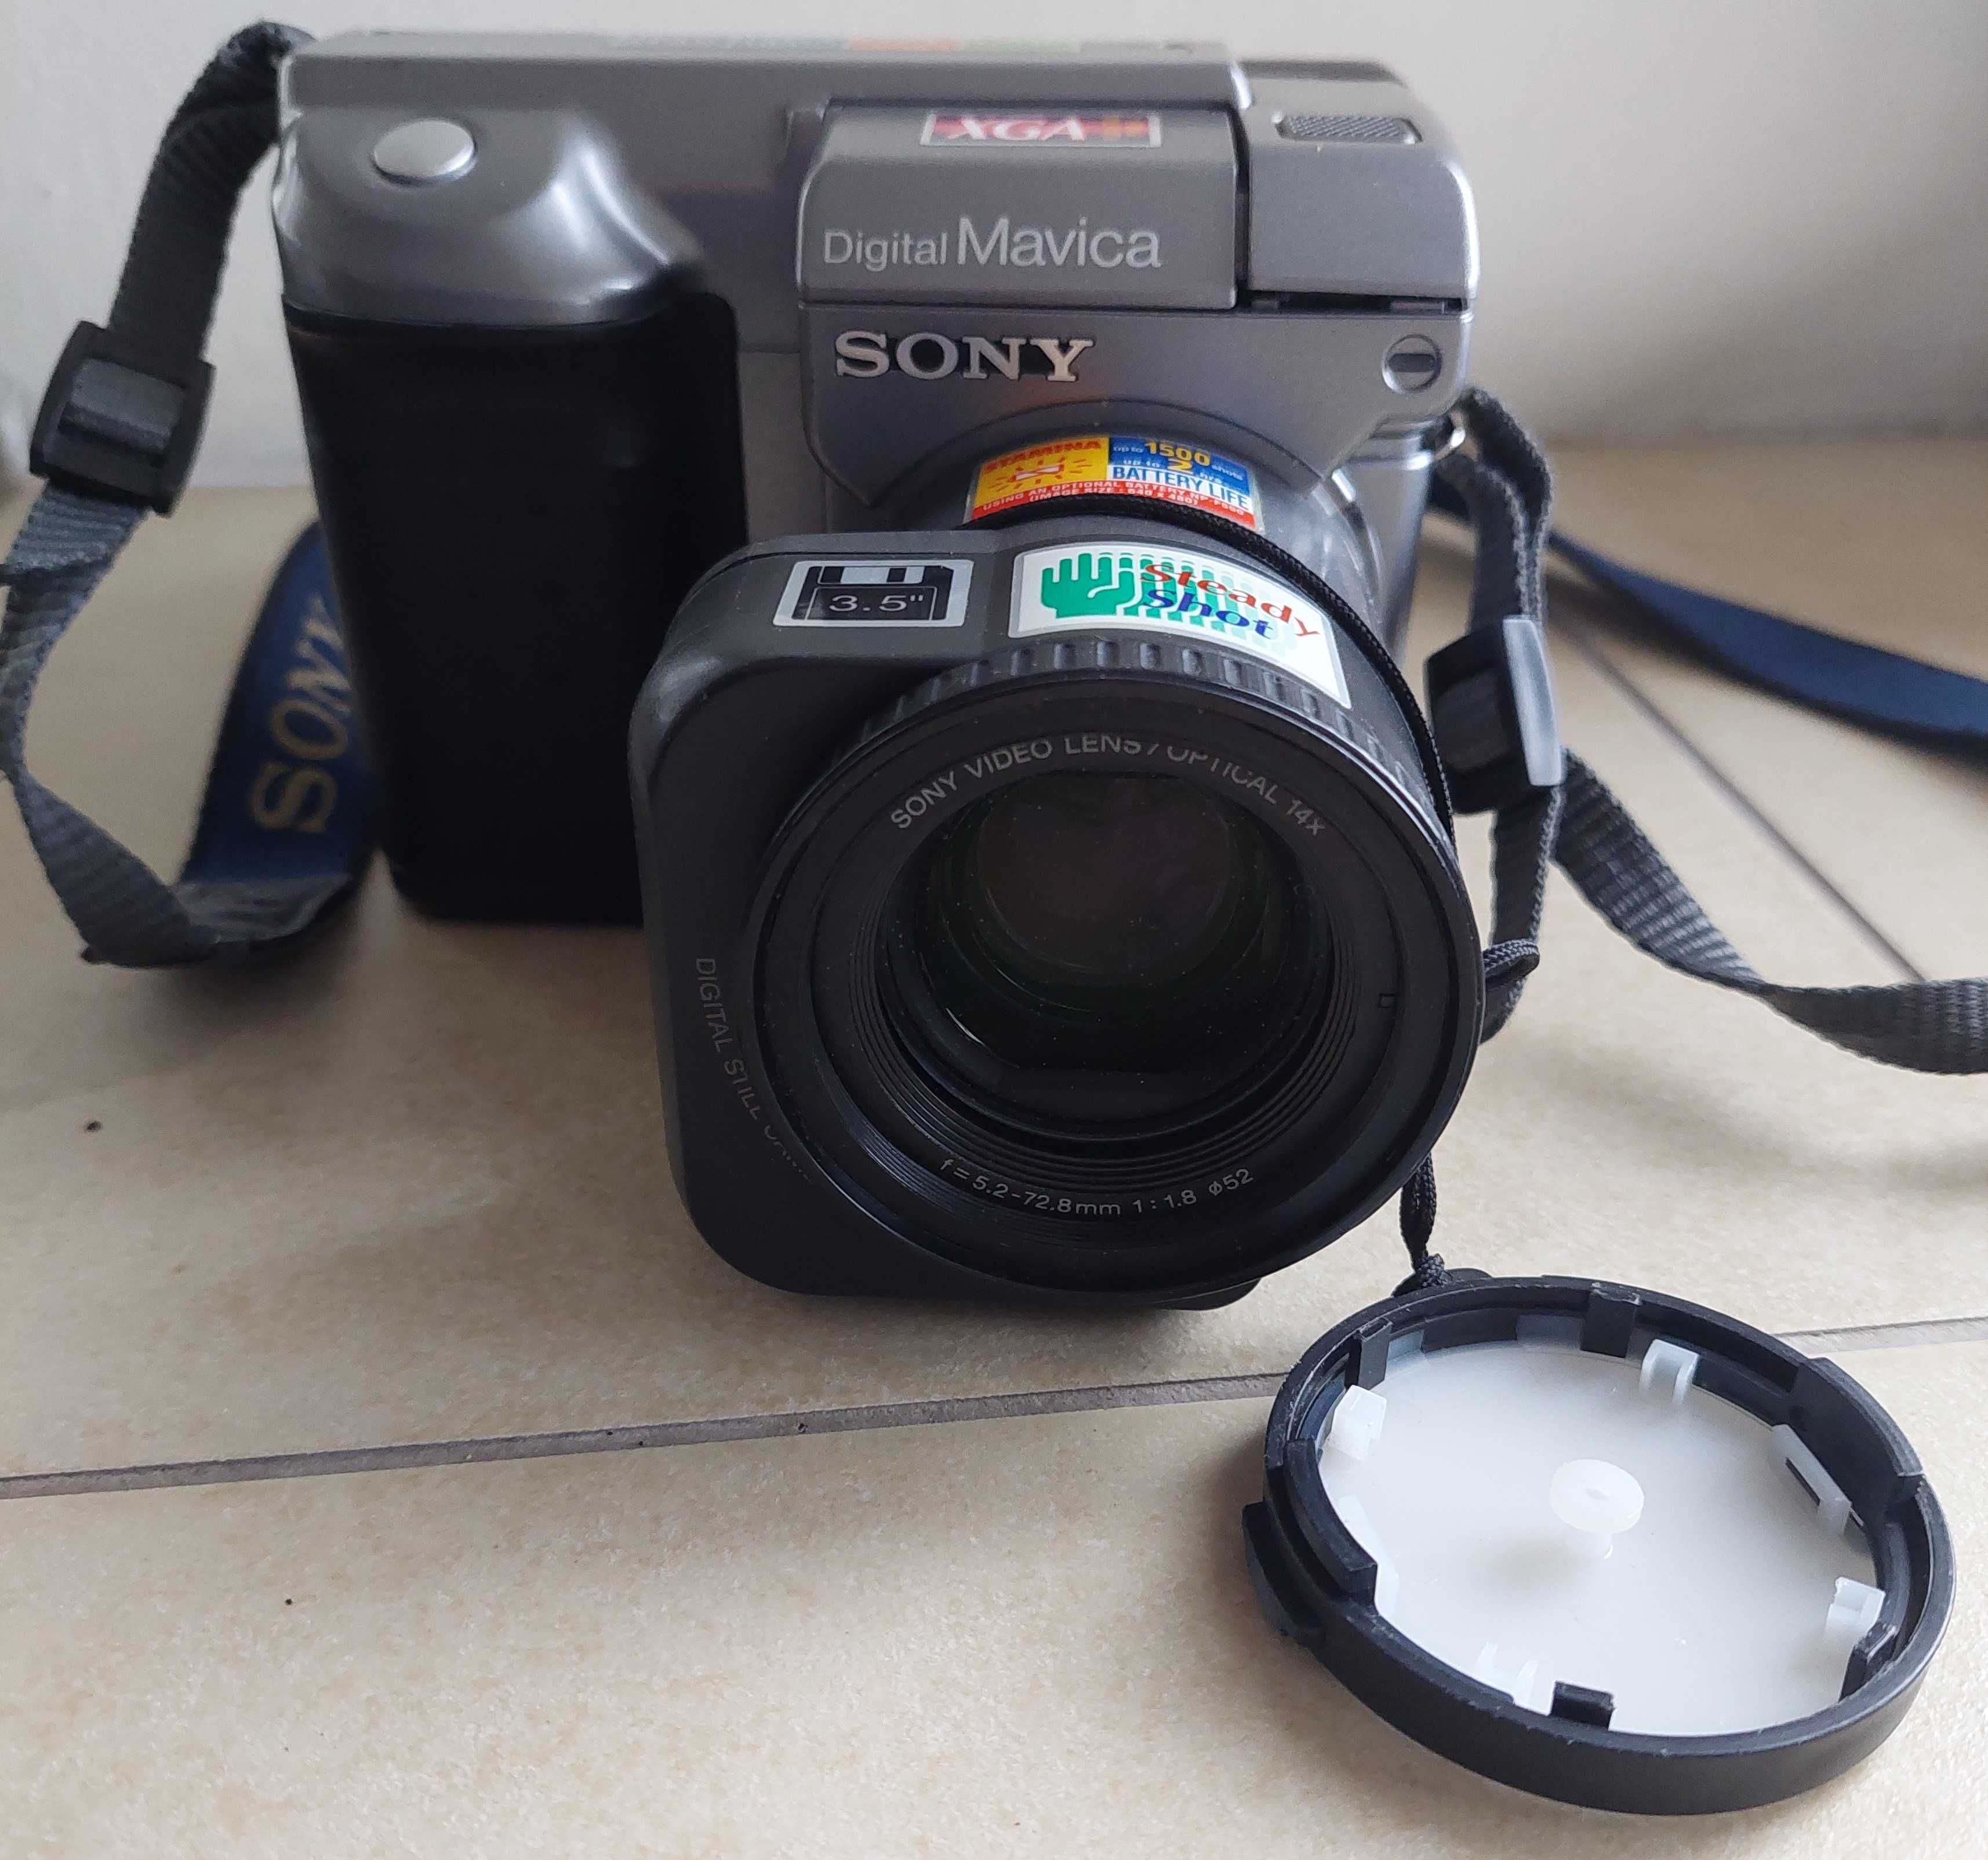 Aparat fotograficzny Sony Digital Mavica MVC-FD-91 - używany, sprawny